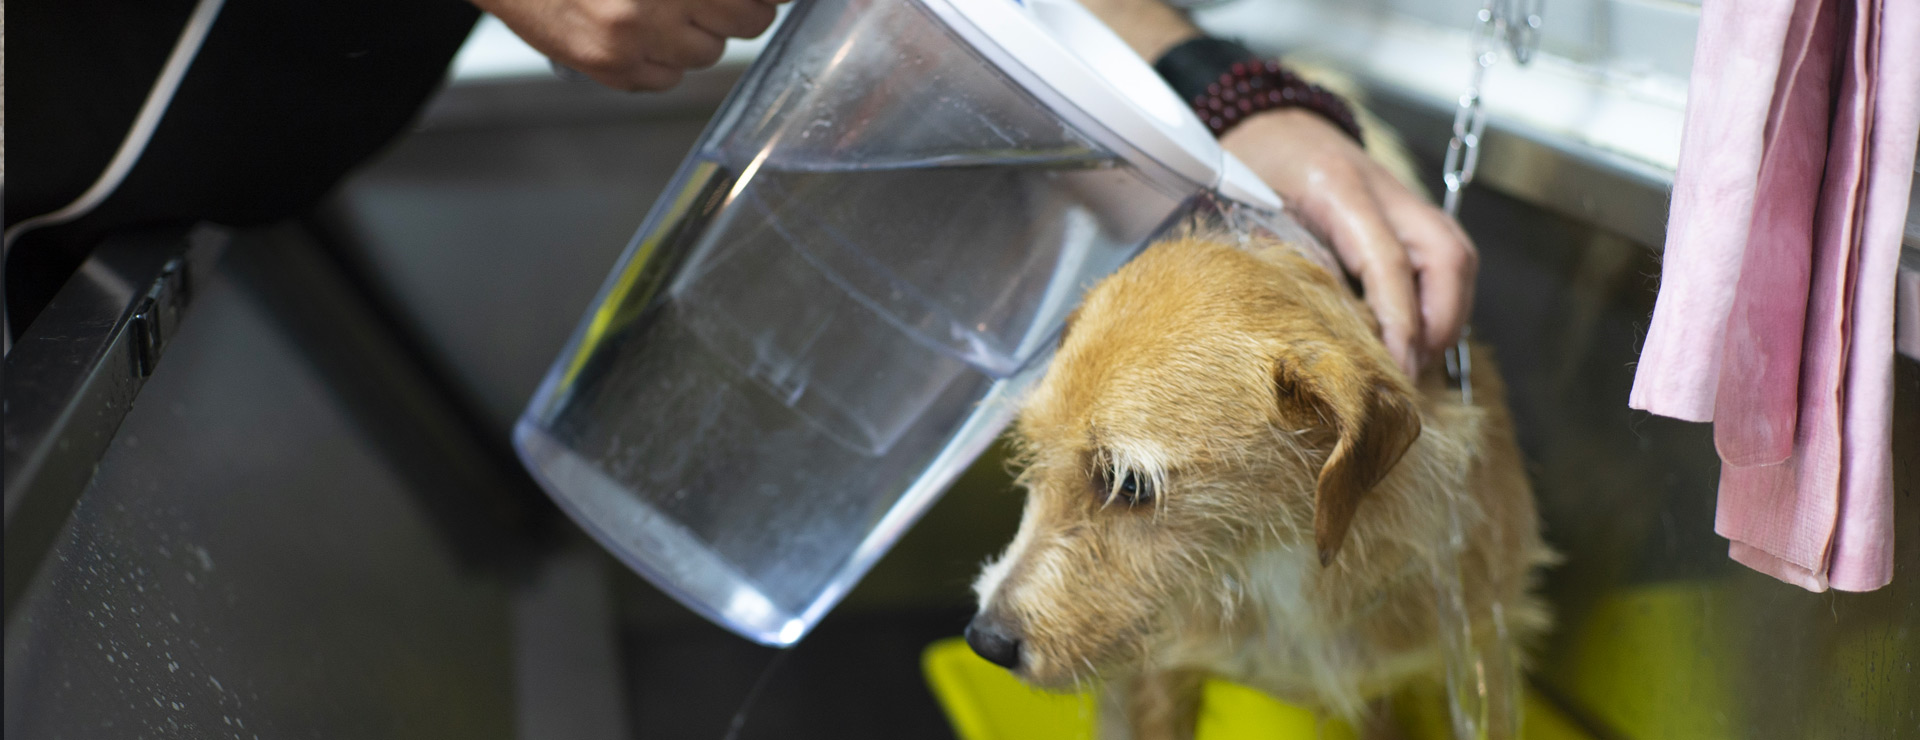 Toelettatore risciacqua cane con acqua ozonizzata